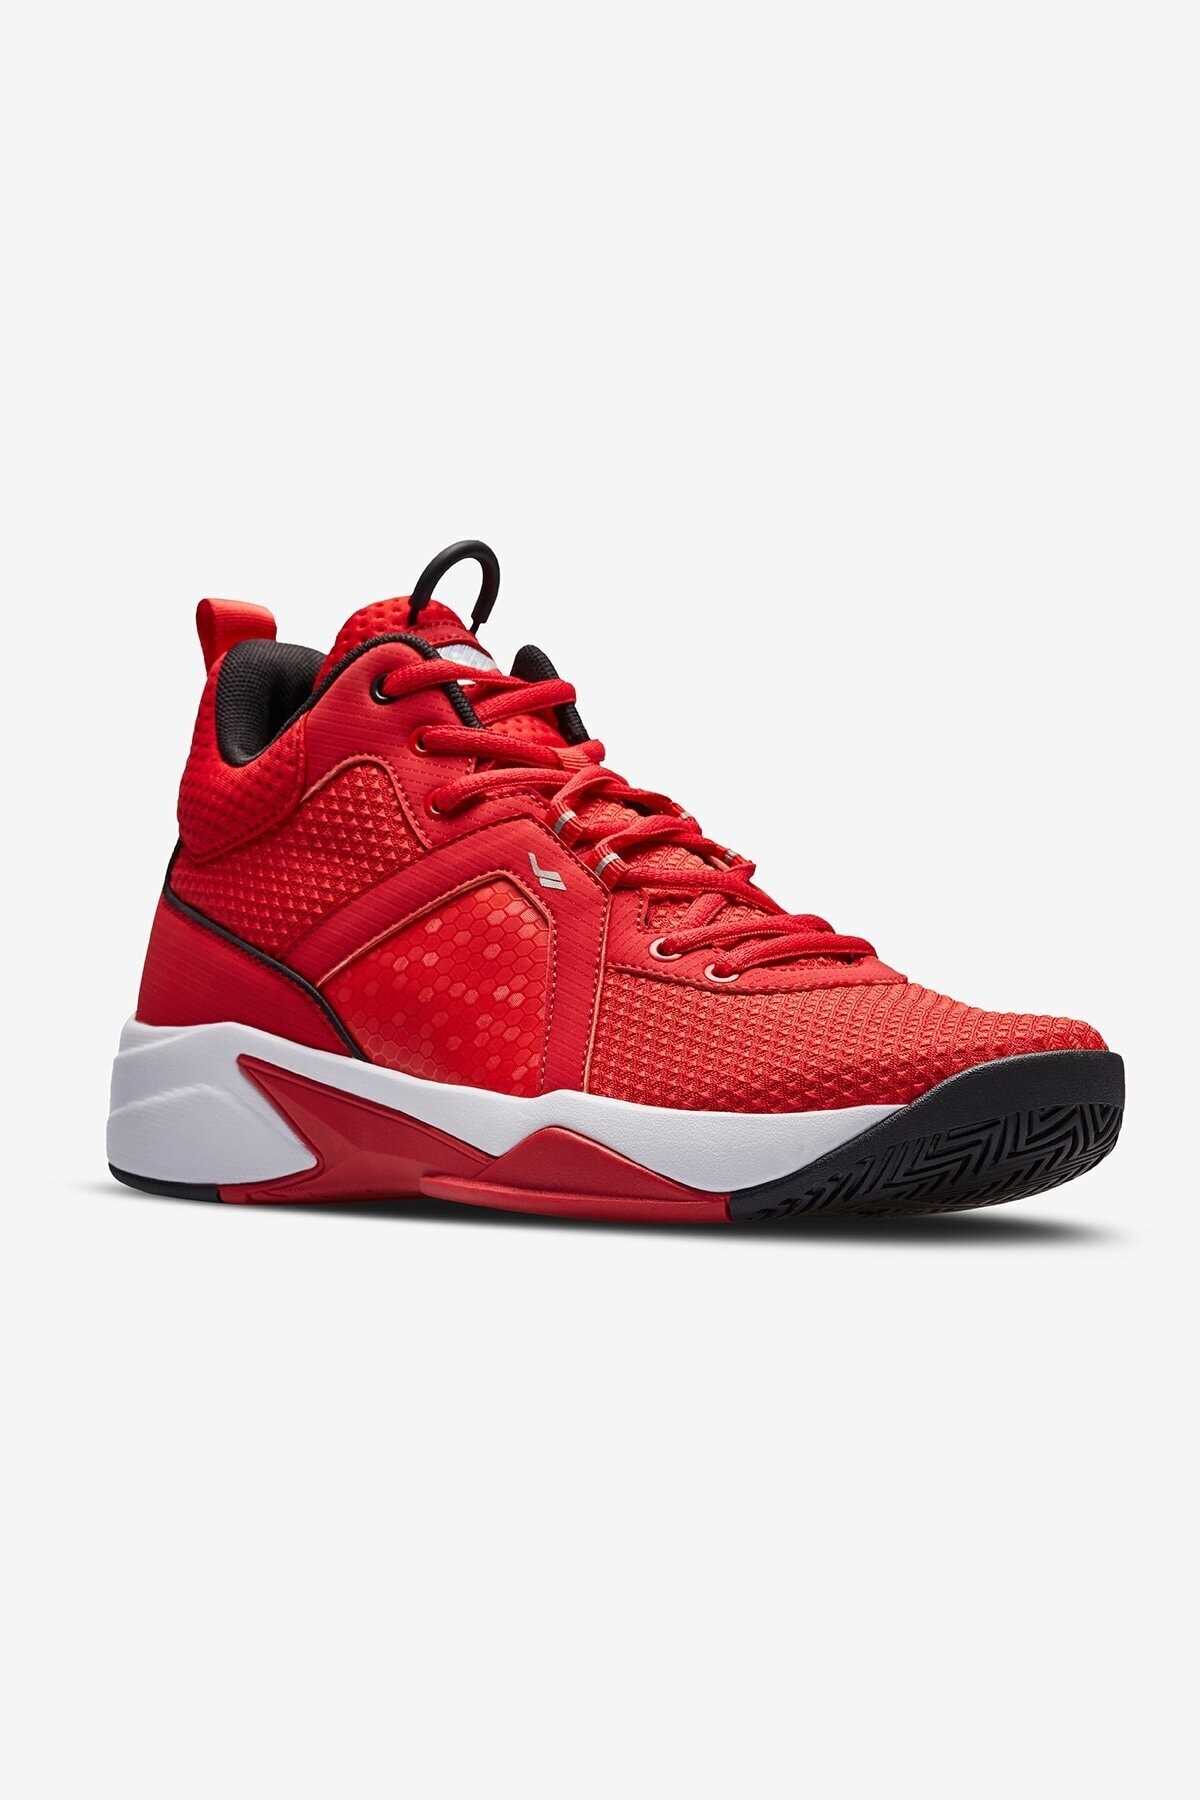 خرید کفش بسکتبال خفن برند Lescon رنگ قرمز ty49374815